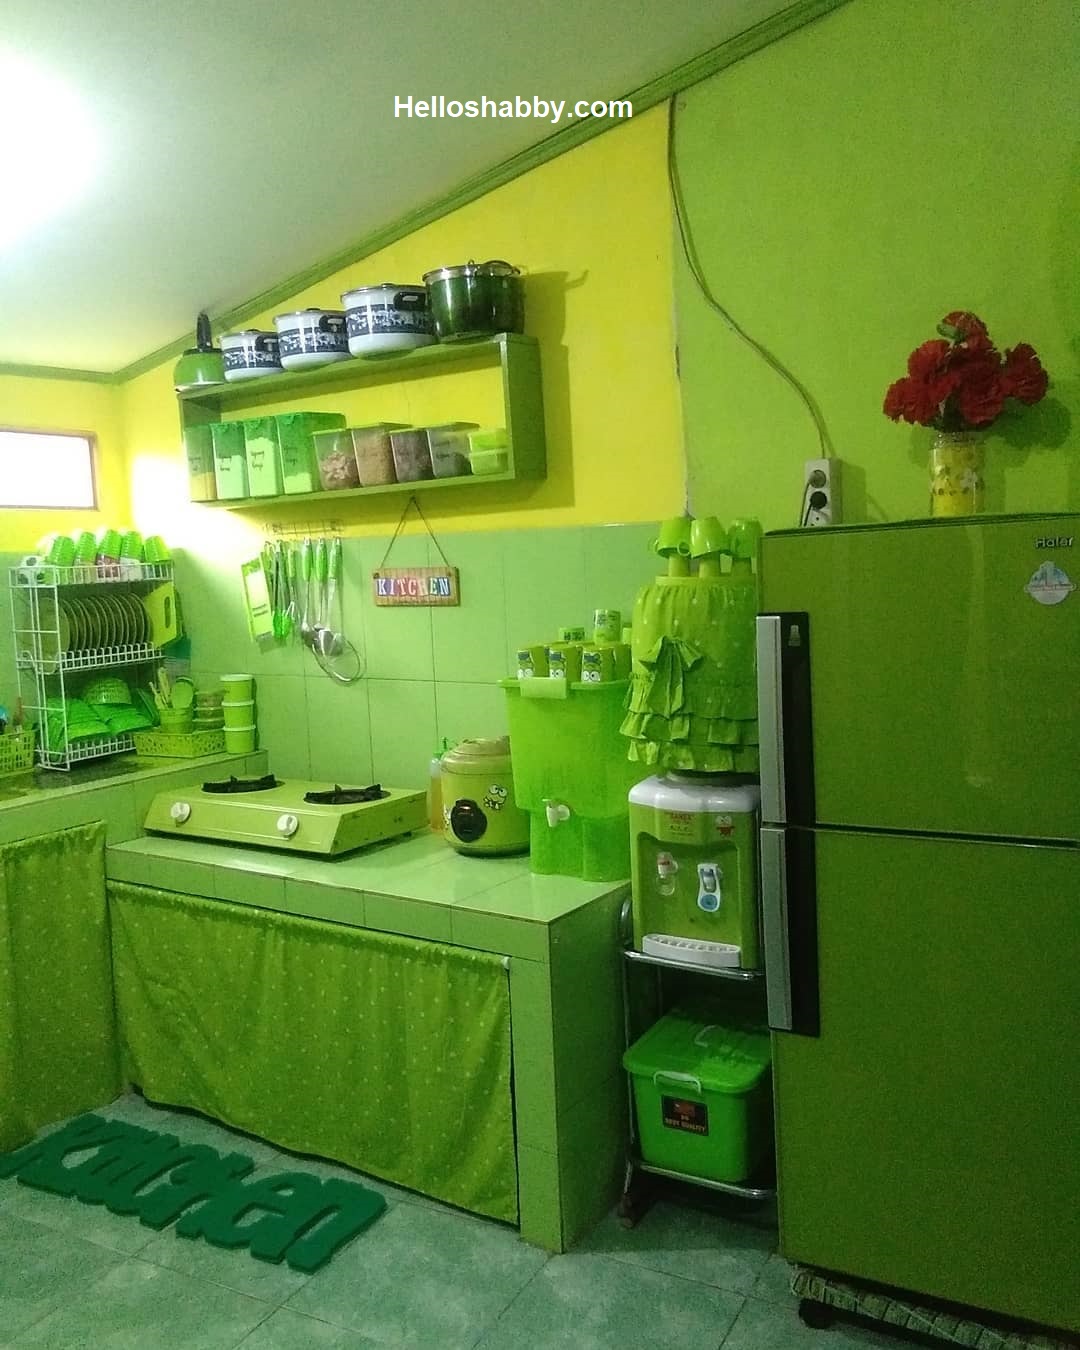 Menarik 6 Suasana Dapur Cantik Dengan Warna Cat Yang Pas HelloShabbycom Interior And Exterior Solutions